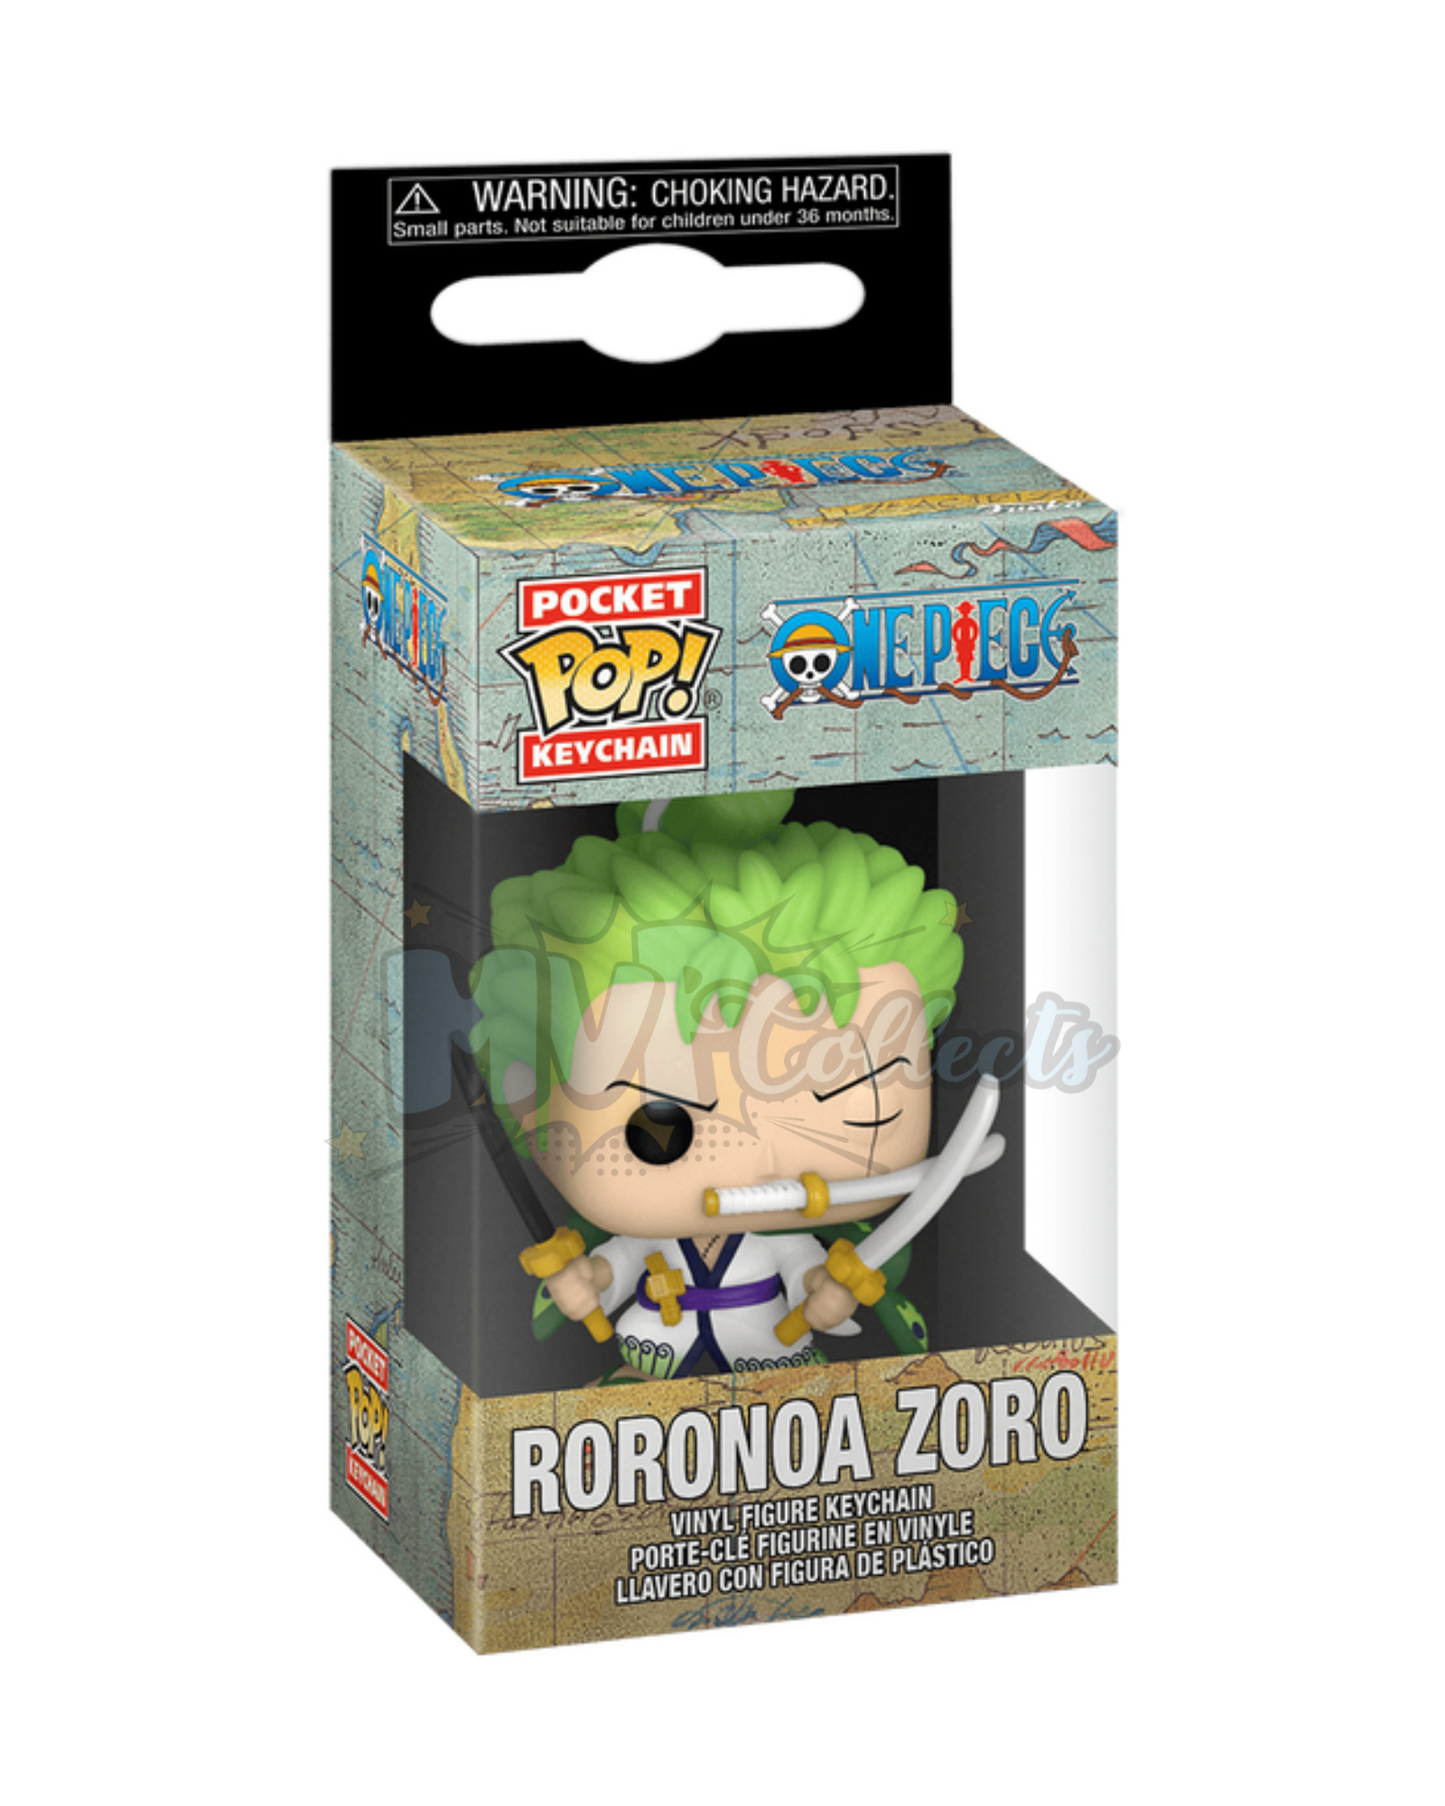 Pocket Pop! keychain: One Piece "Roronoa Zoro